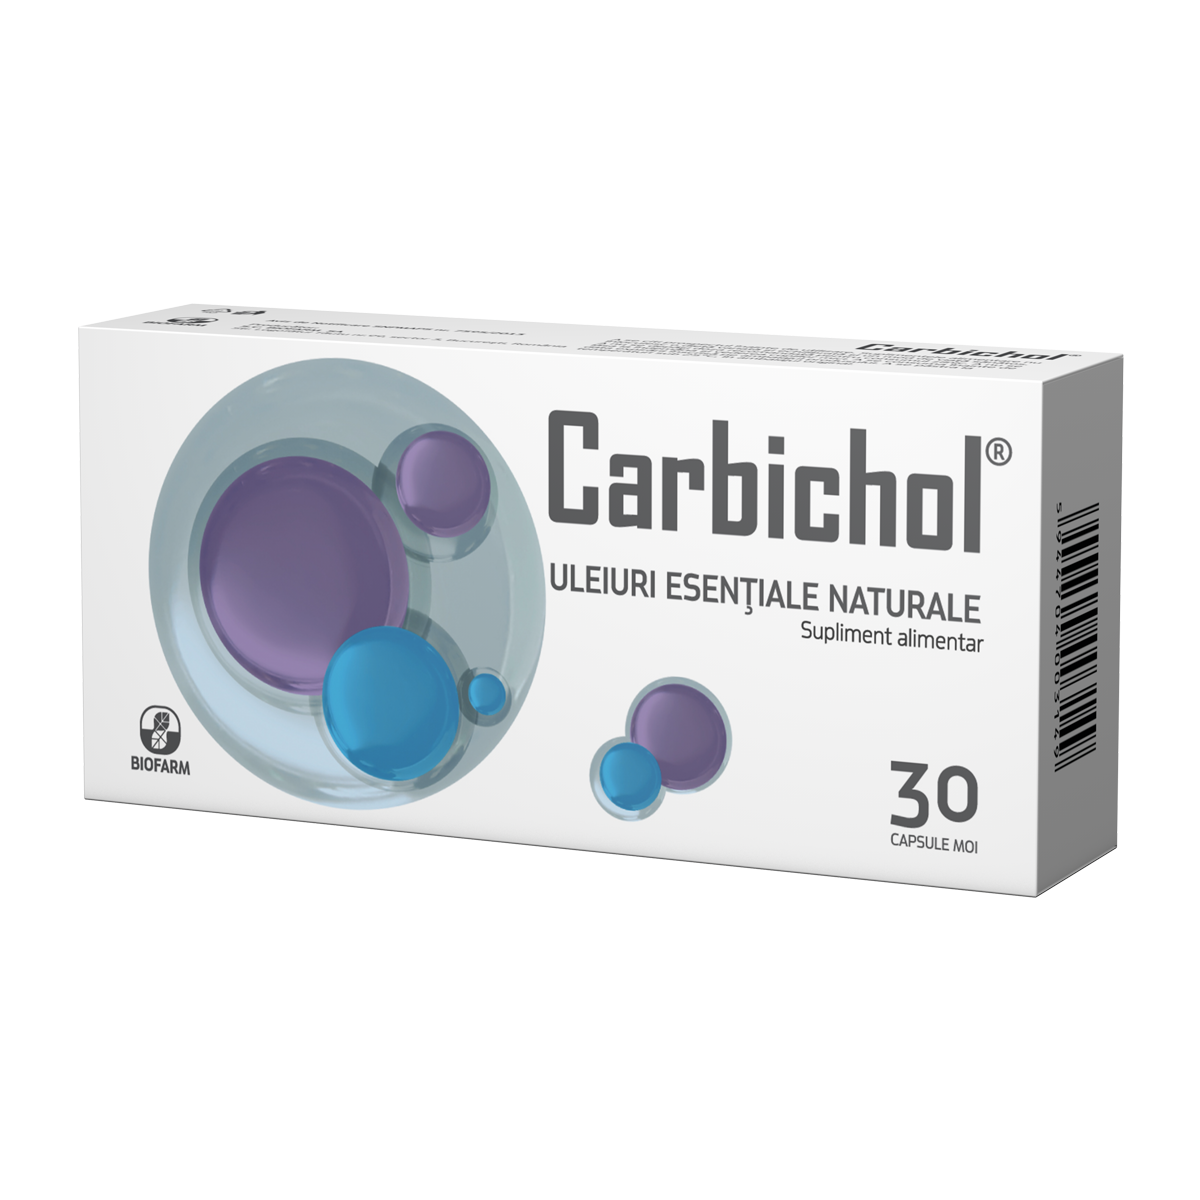 Meteorism - Carbichol, 30 capsule moi, Biofarm, sinapis.ro